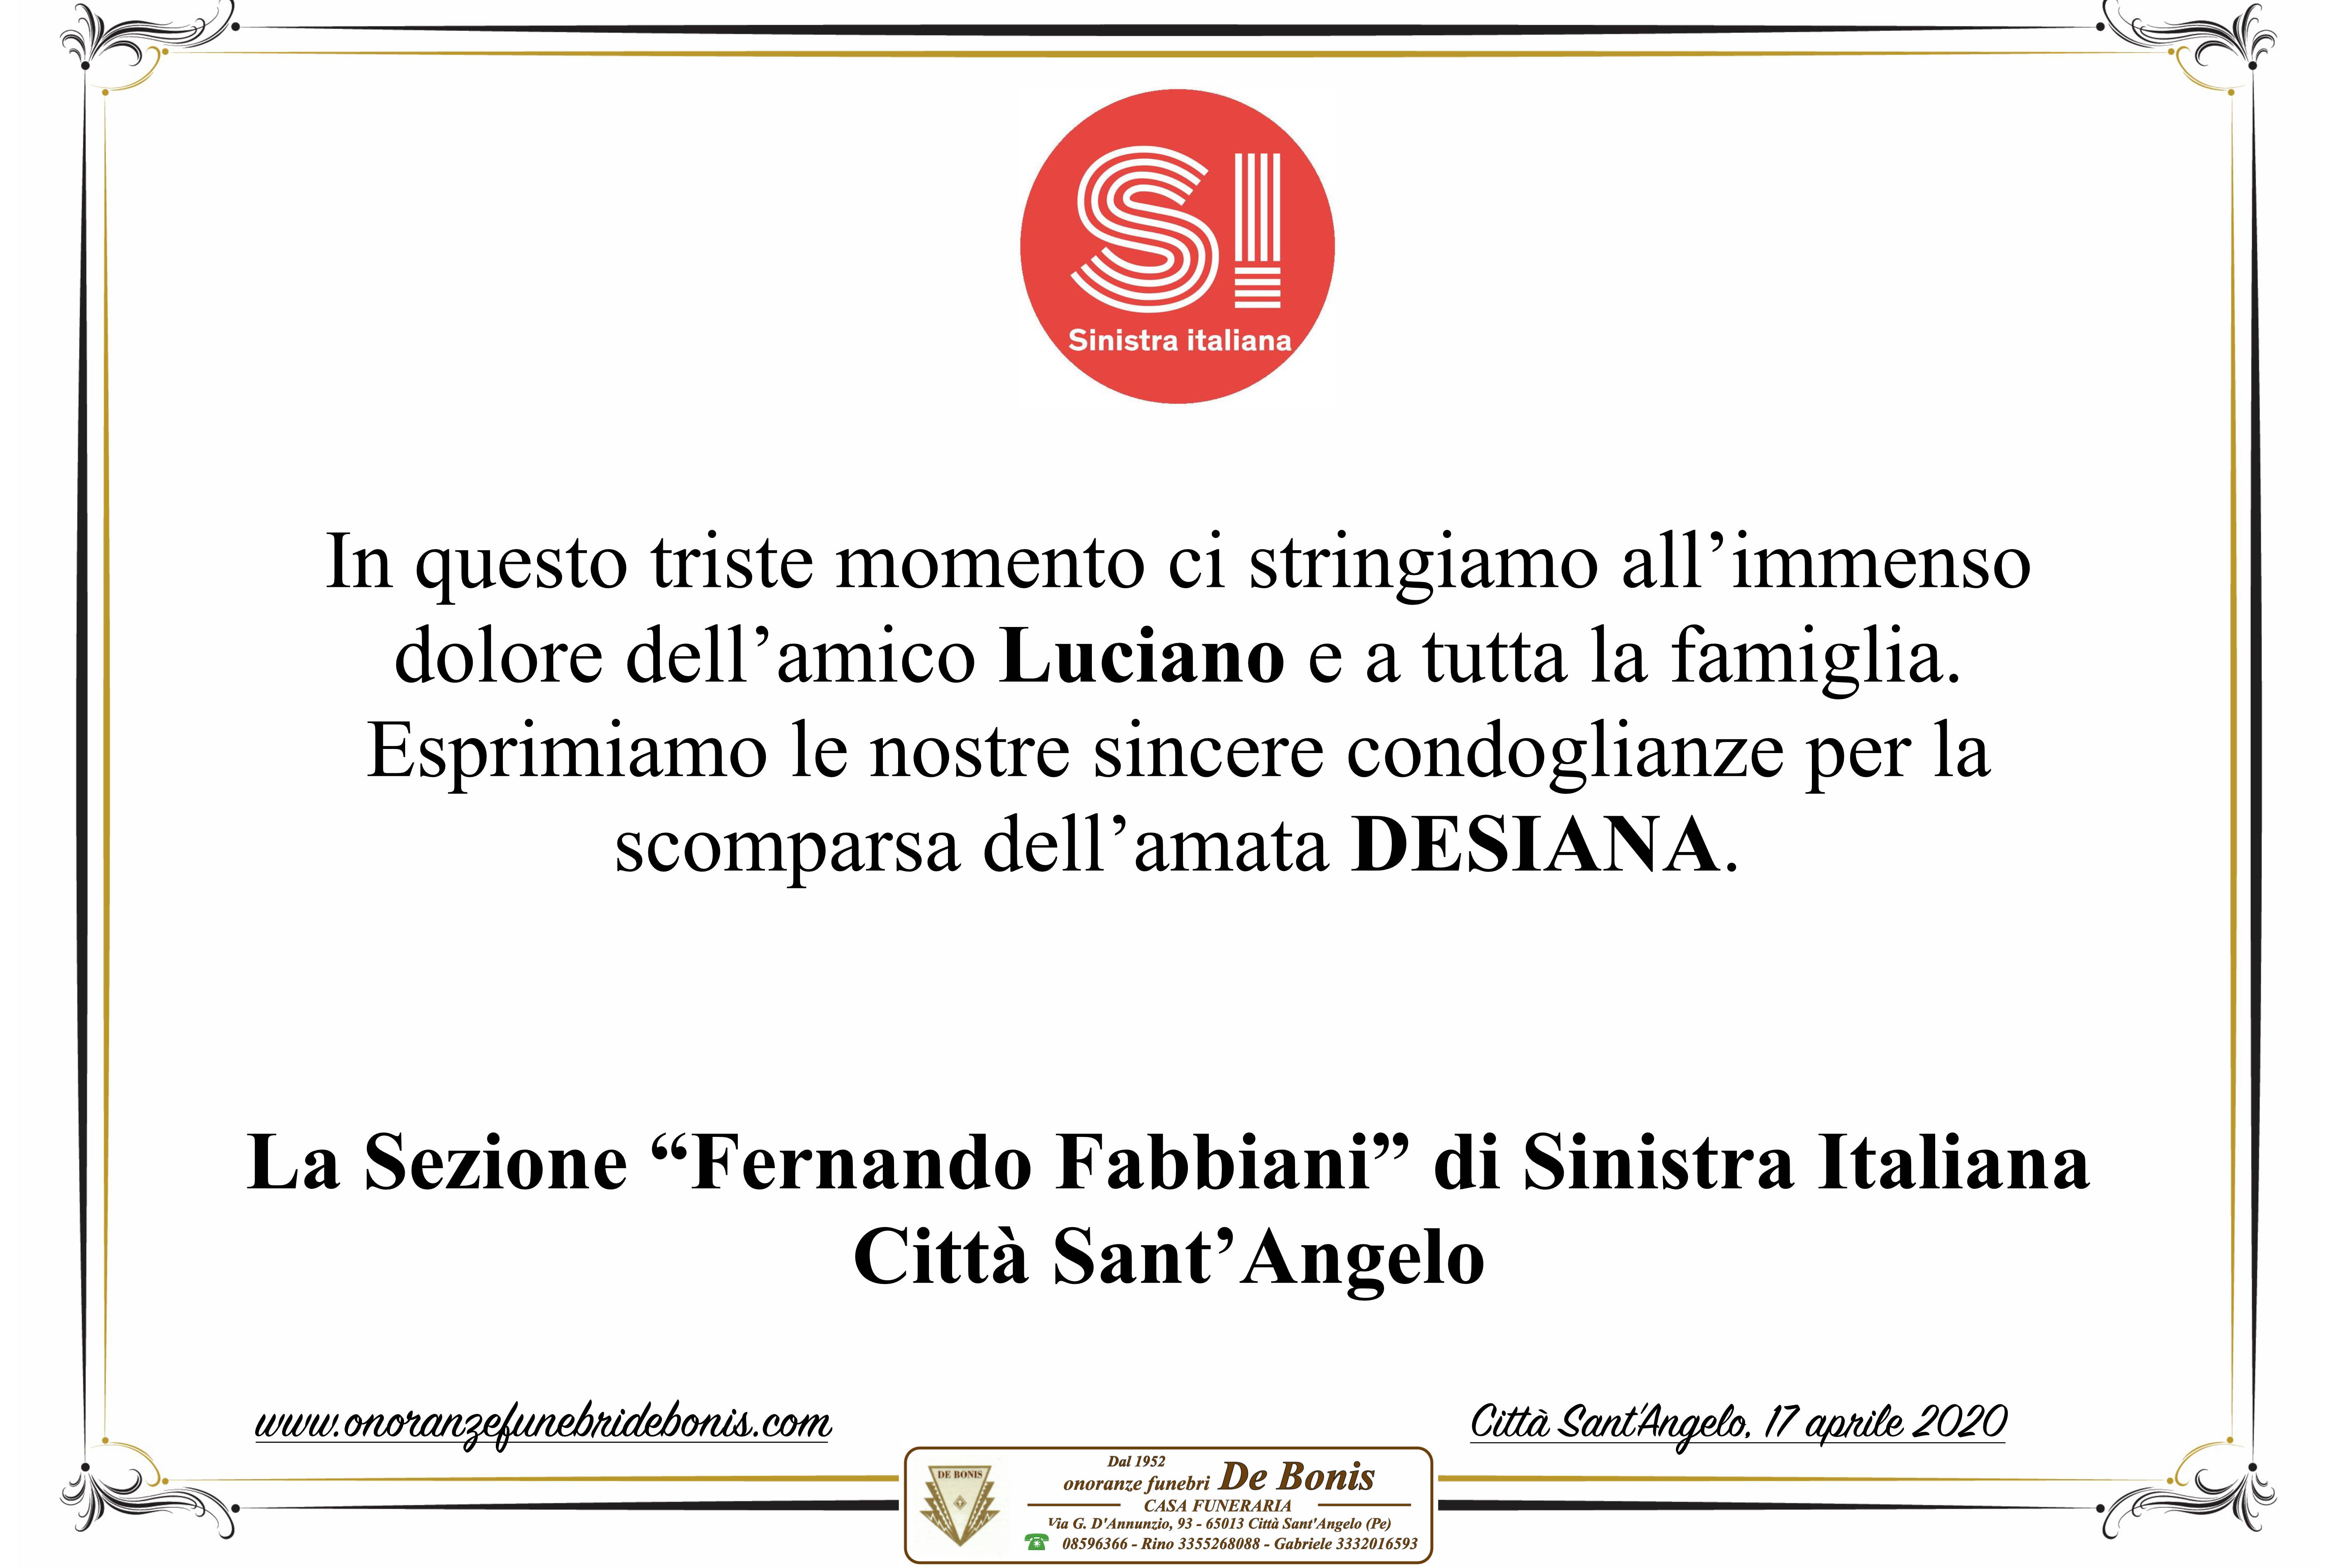 La Sezione "Fernando Fabbiani" di Sinistra Italiana - Città Sant'Angelo